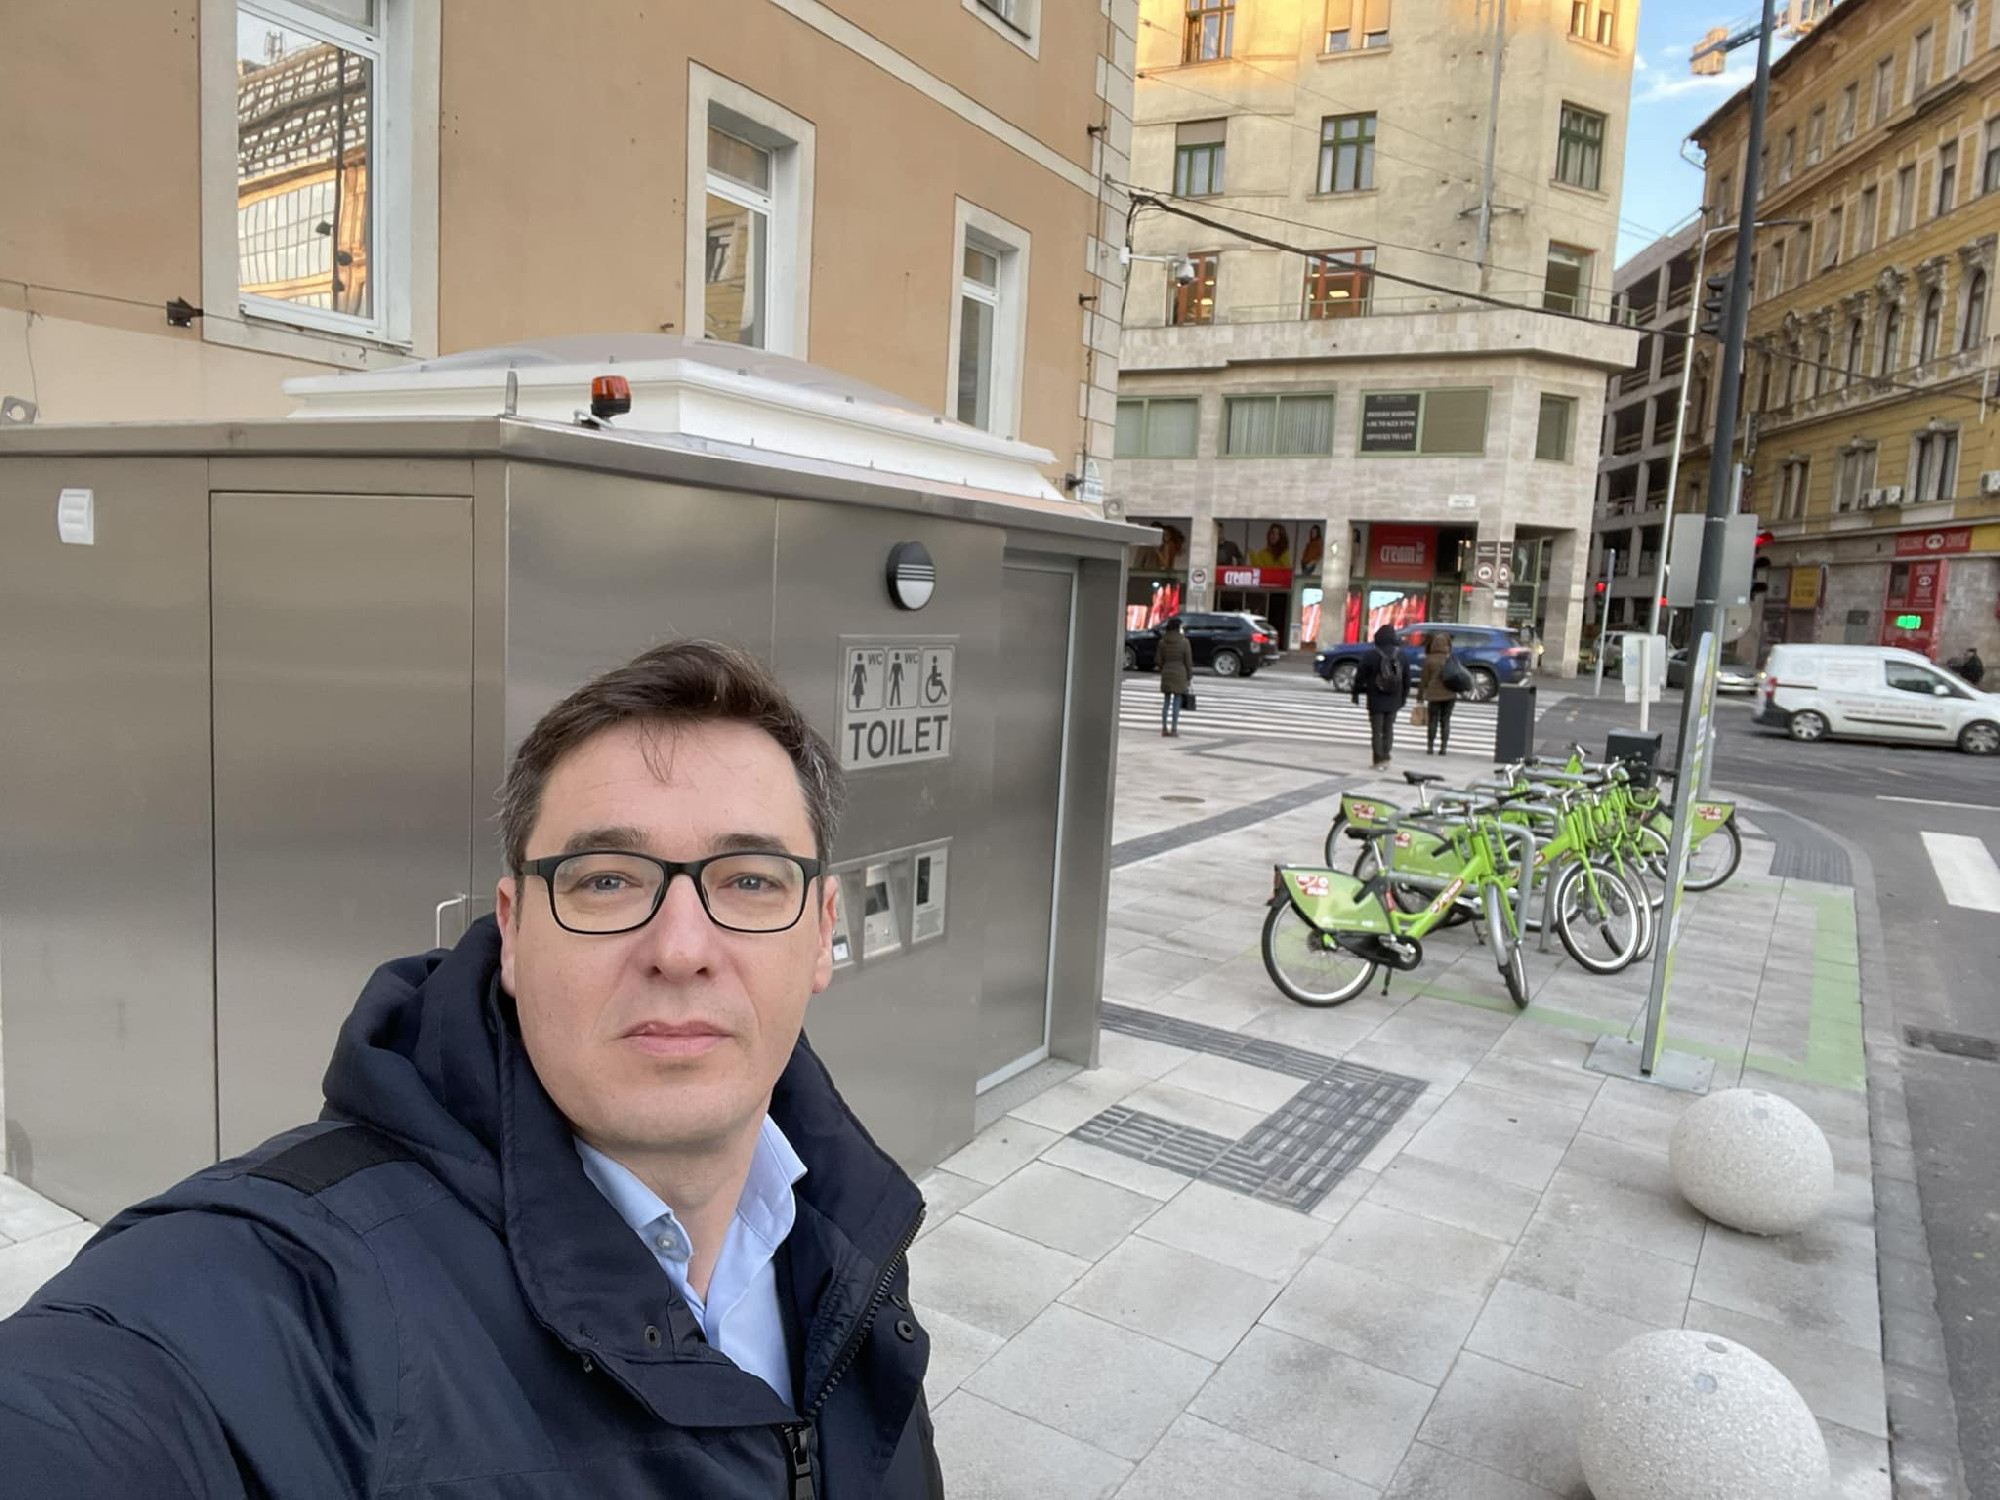 Nyilvános WC miatt kritizálta Karácsony Gergelyt a Fidesz, aki szelfivel szúrt vissza